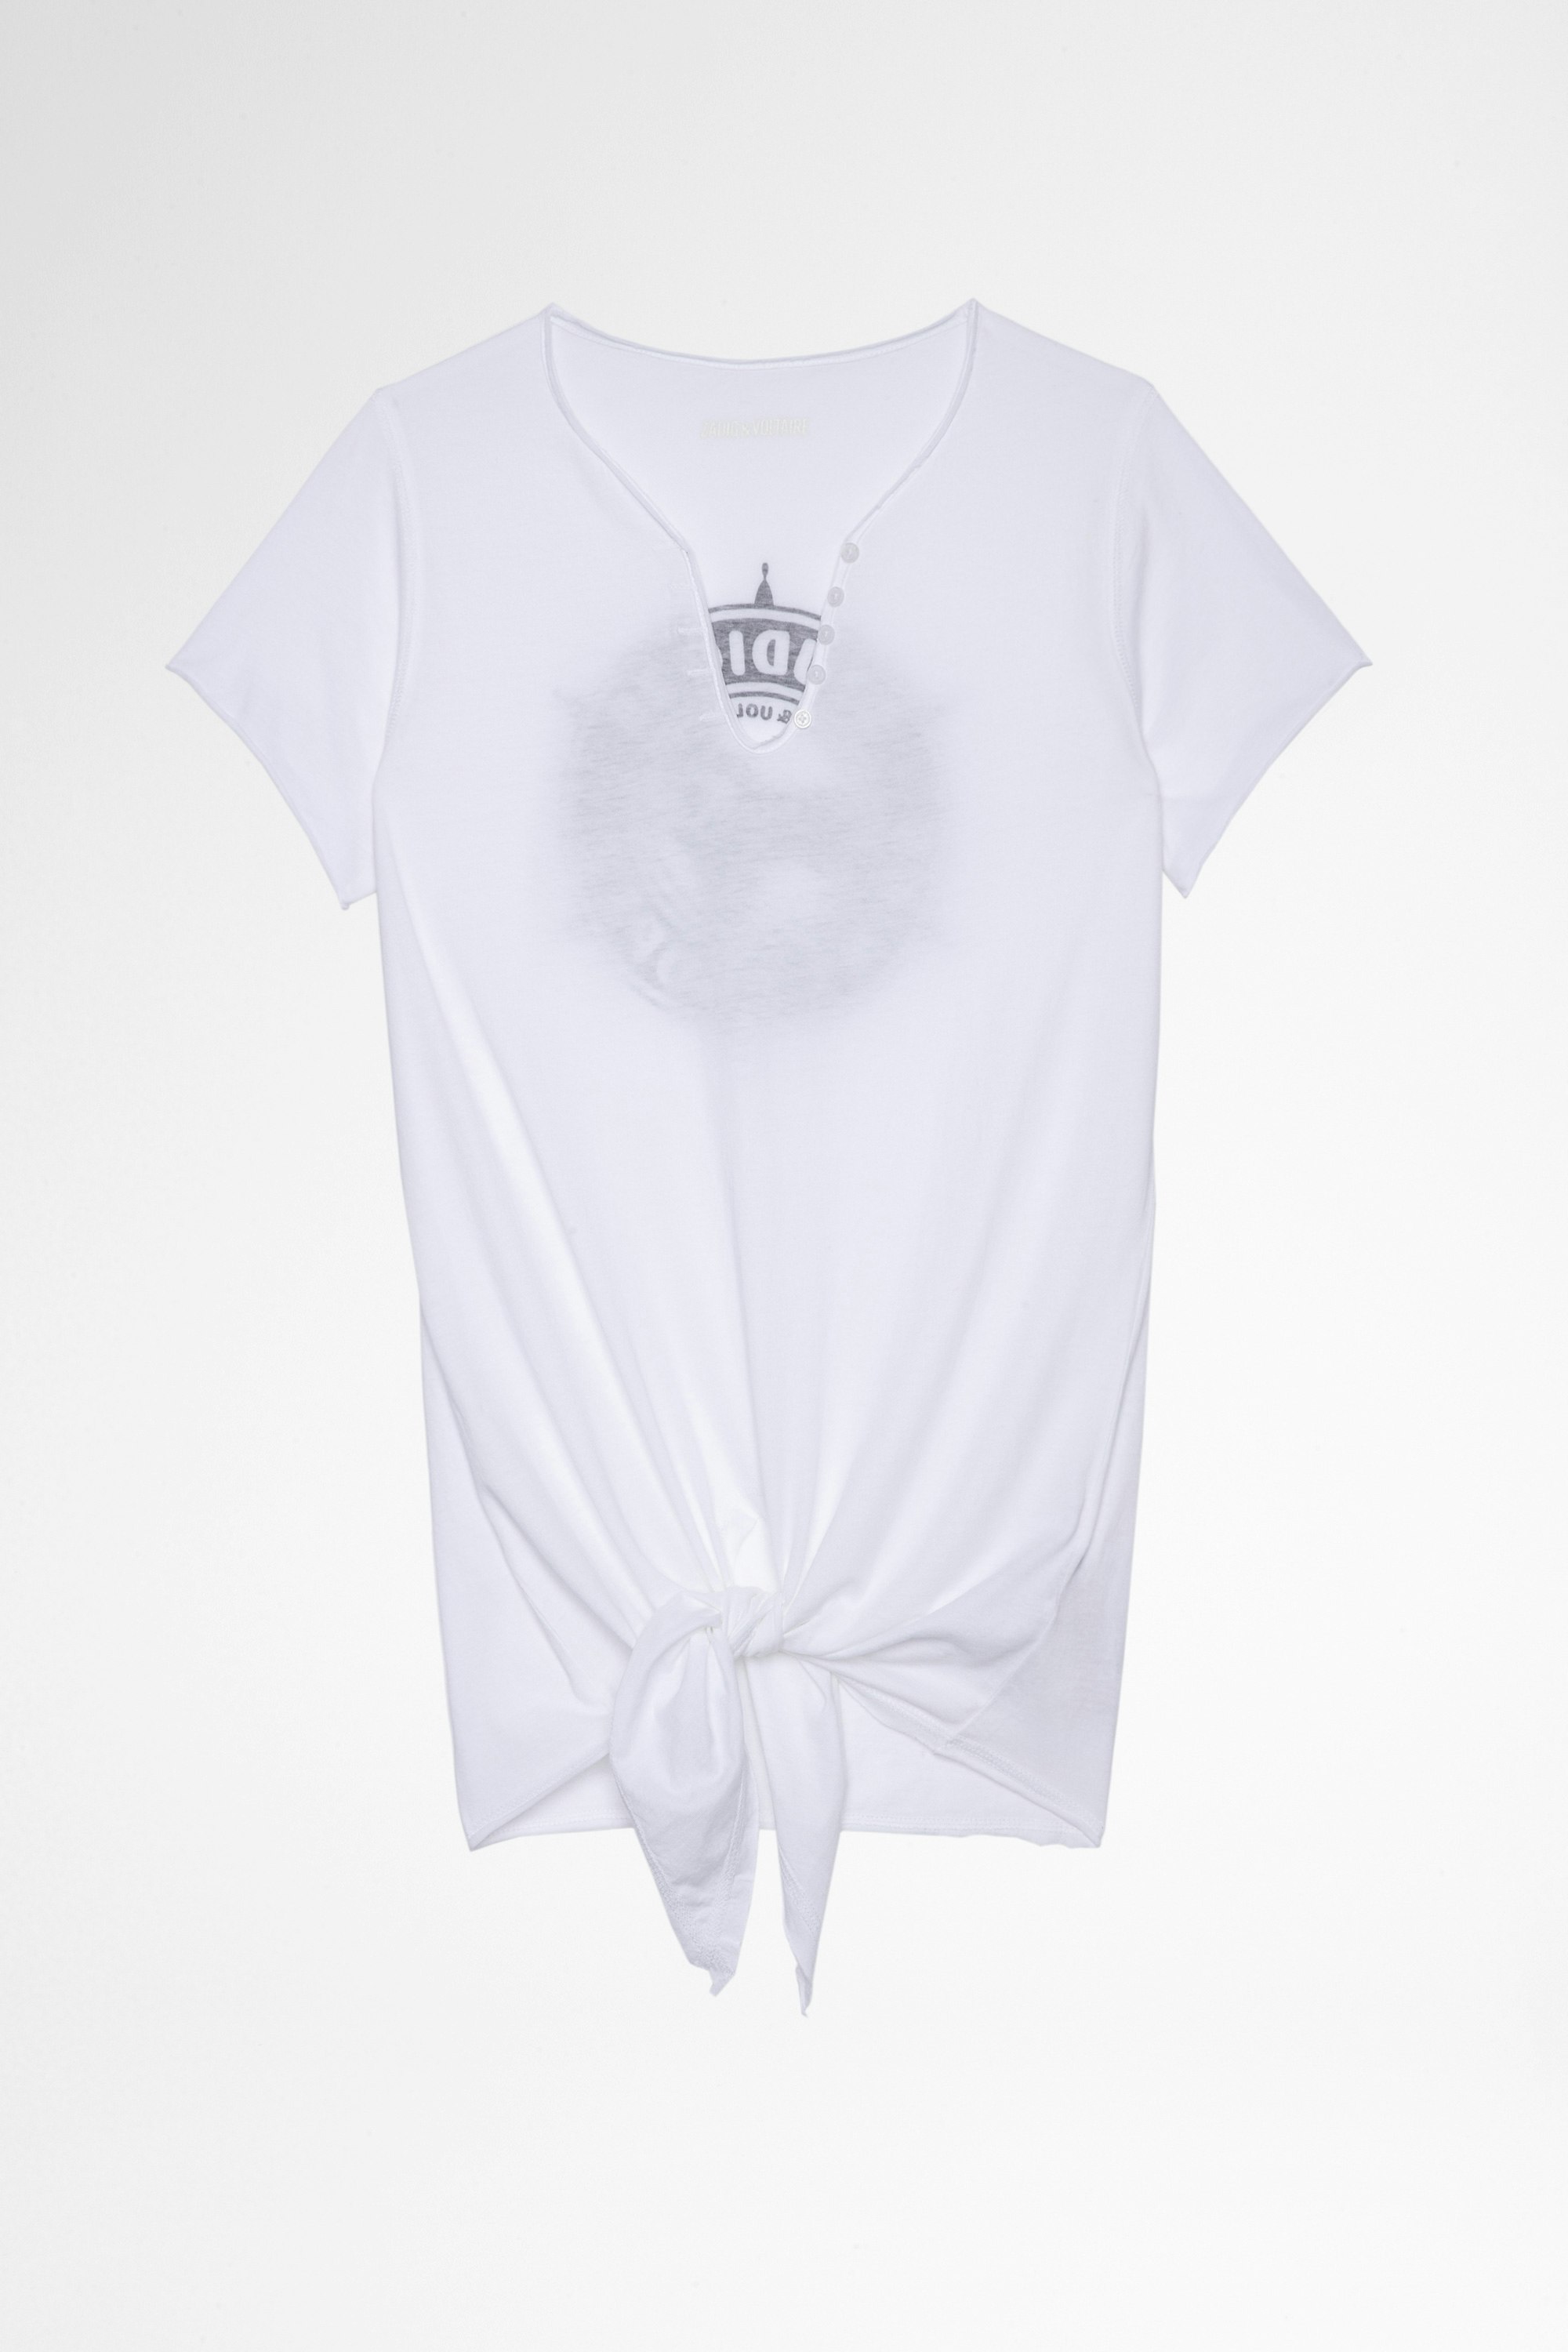 Camiseta Tunisien Studio Camiseta blanca de algodón con cuello tunecino y cordón para atar, para mujer